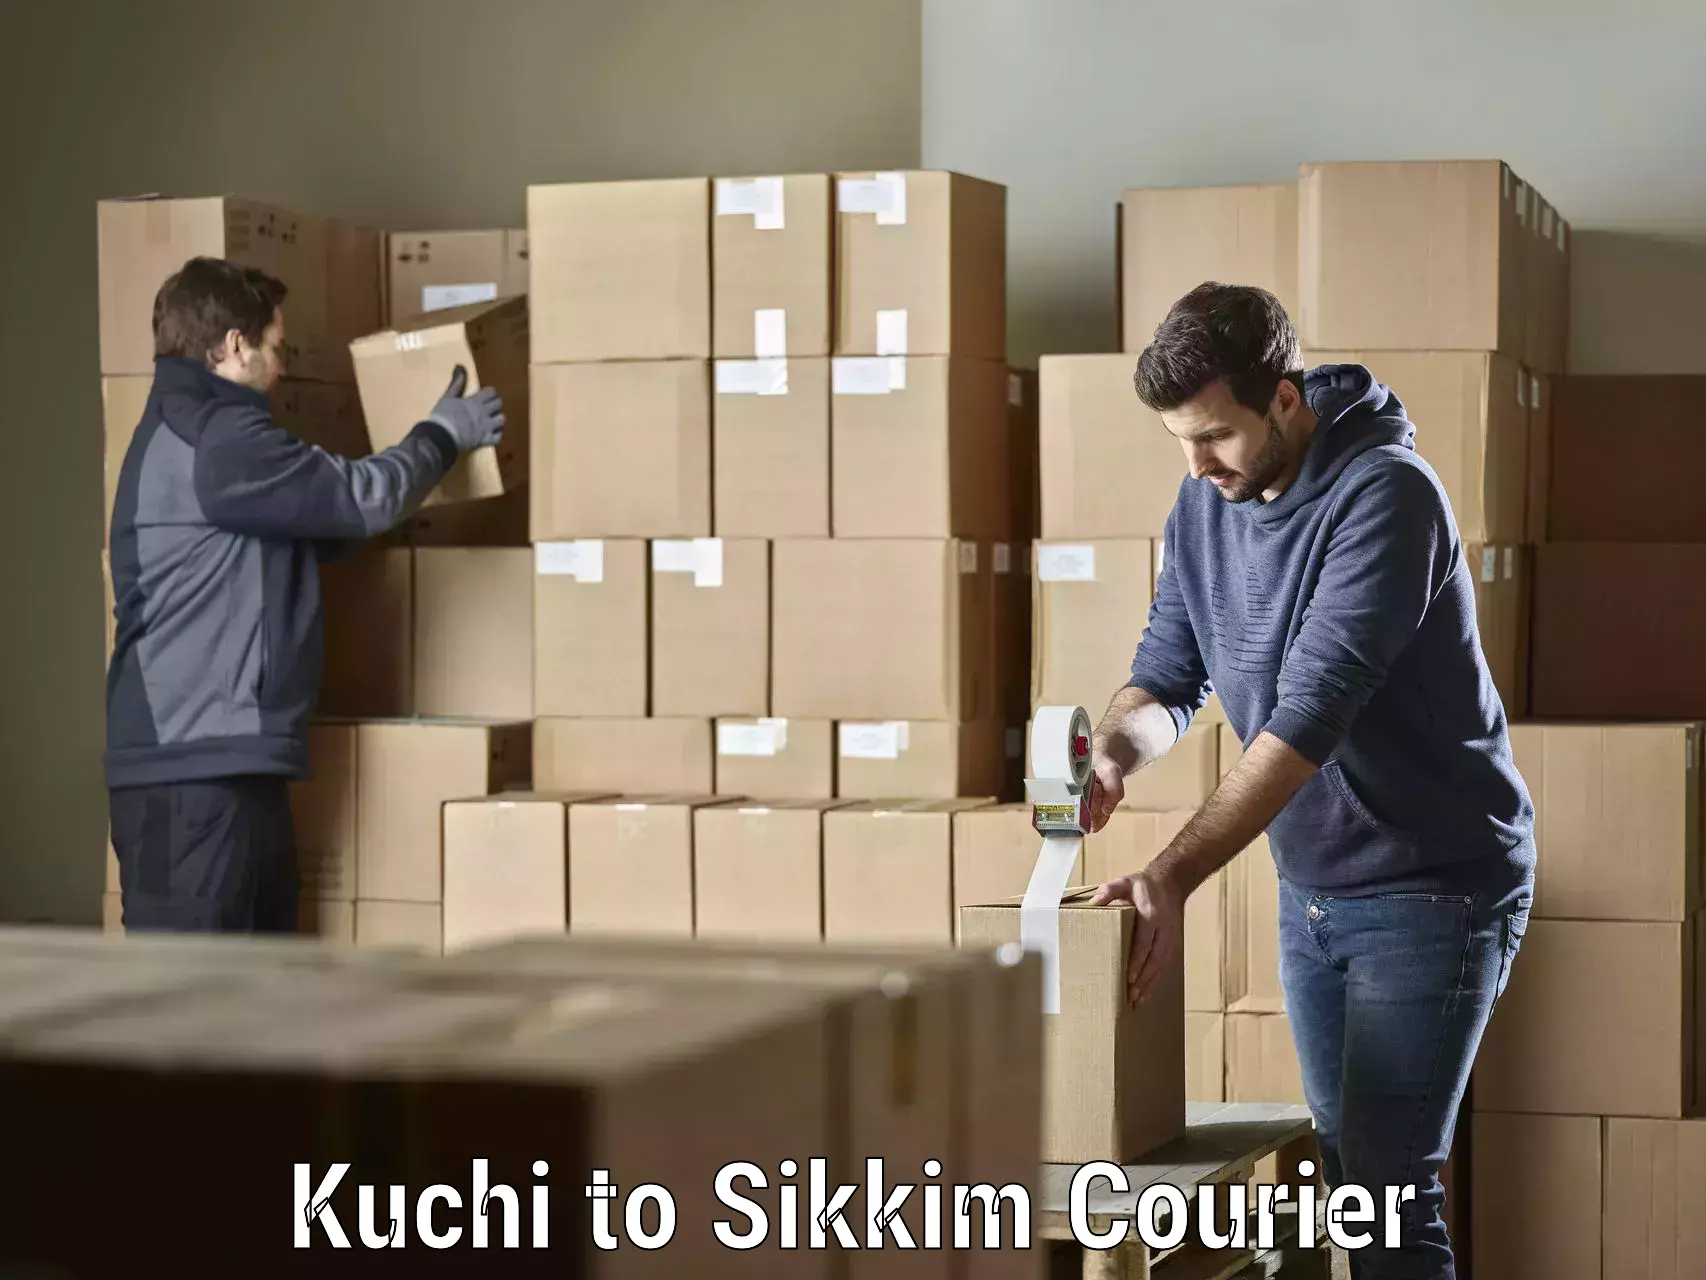 High-speed parcel service Kuchi to Sikkim